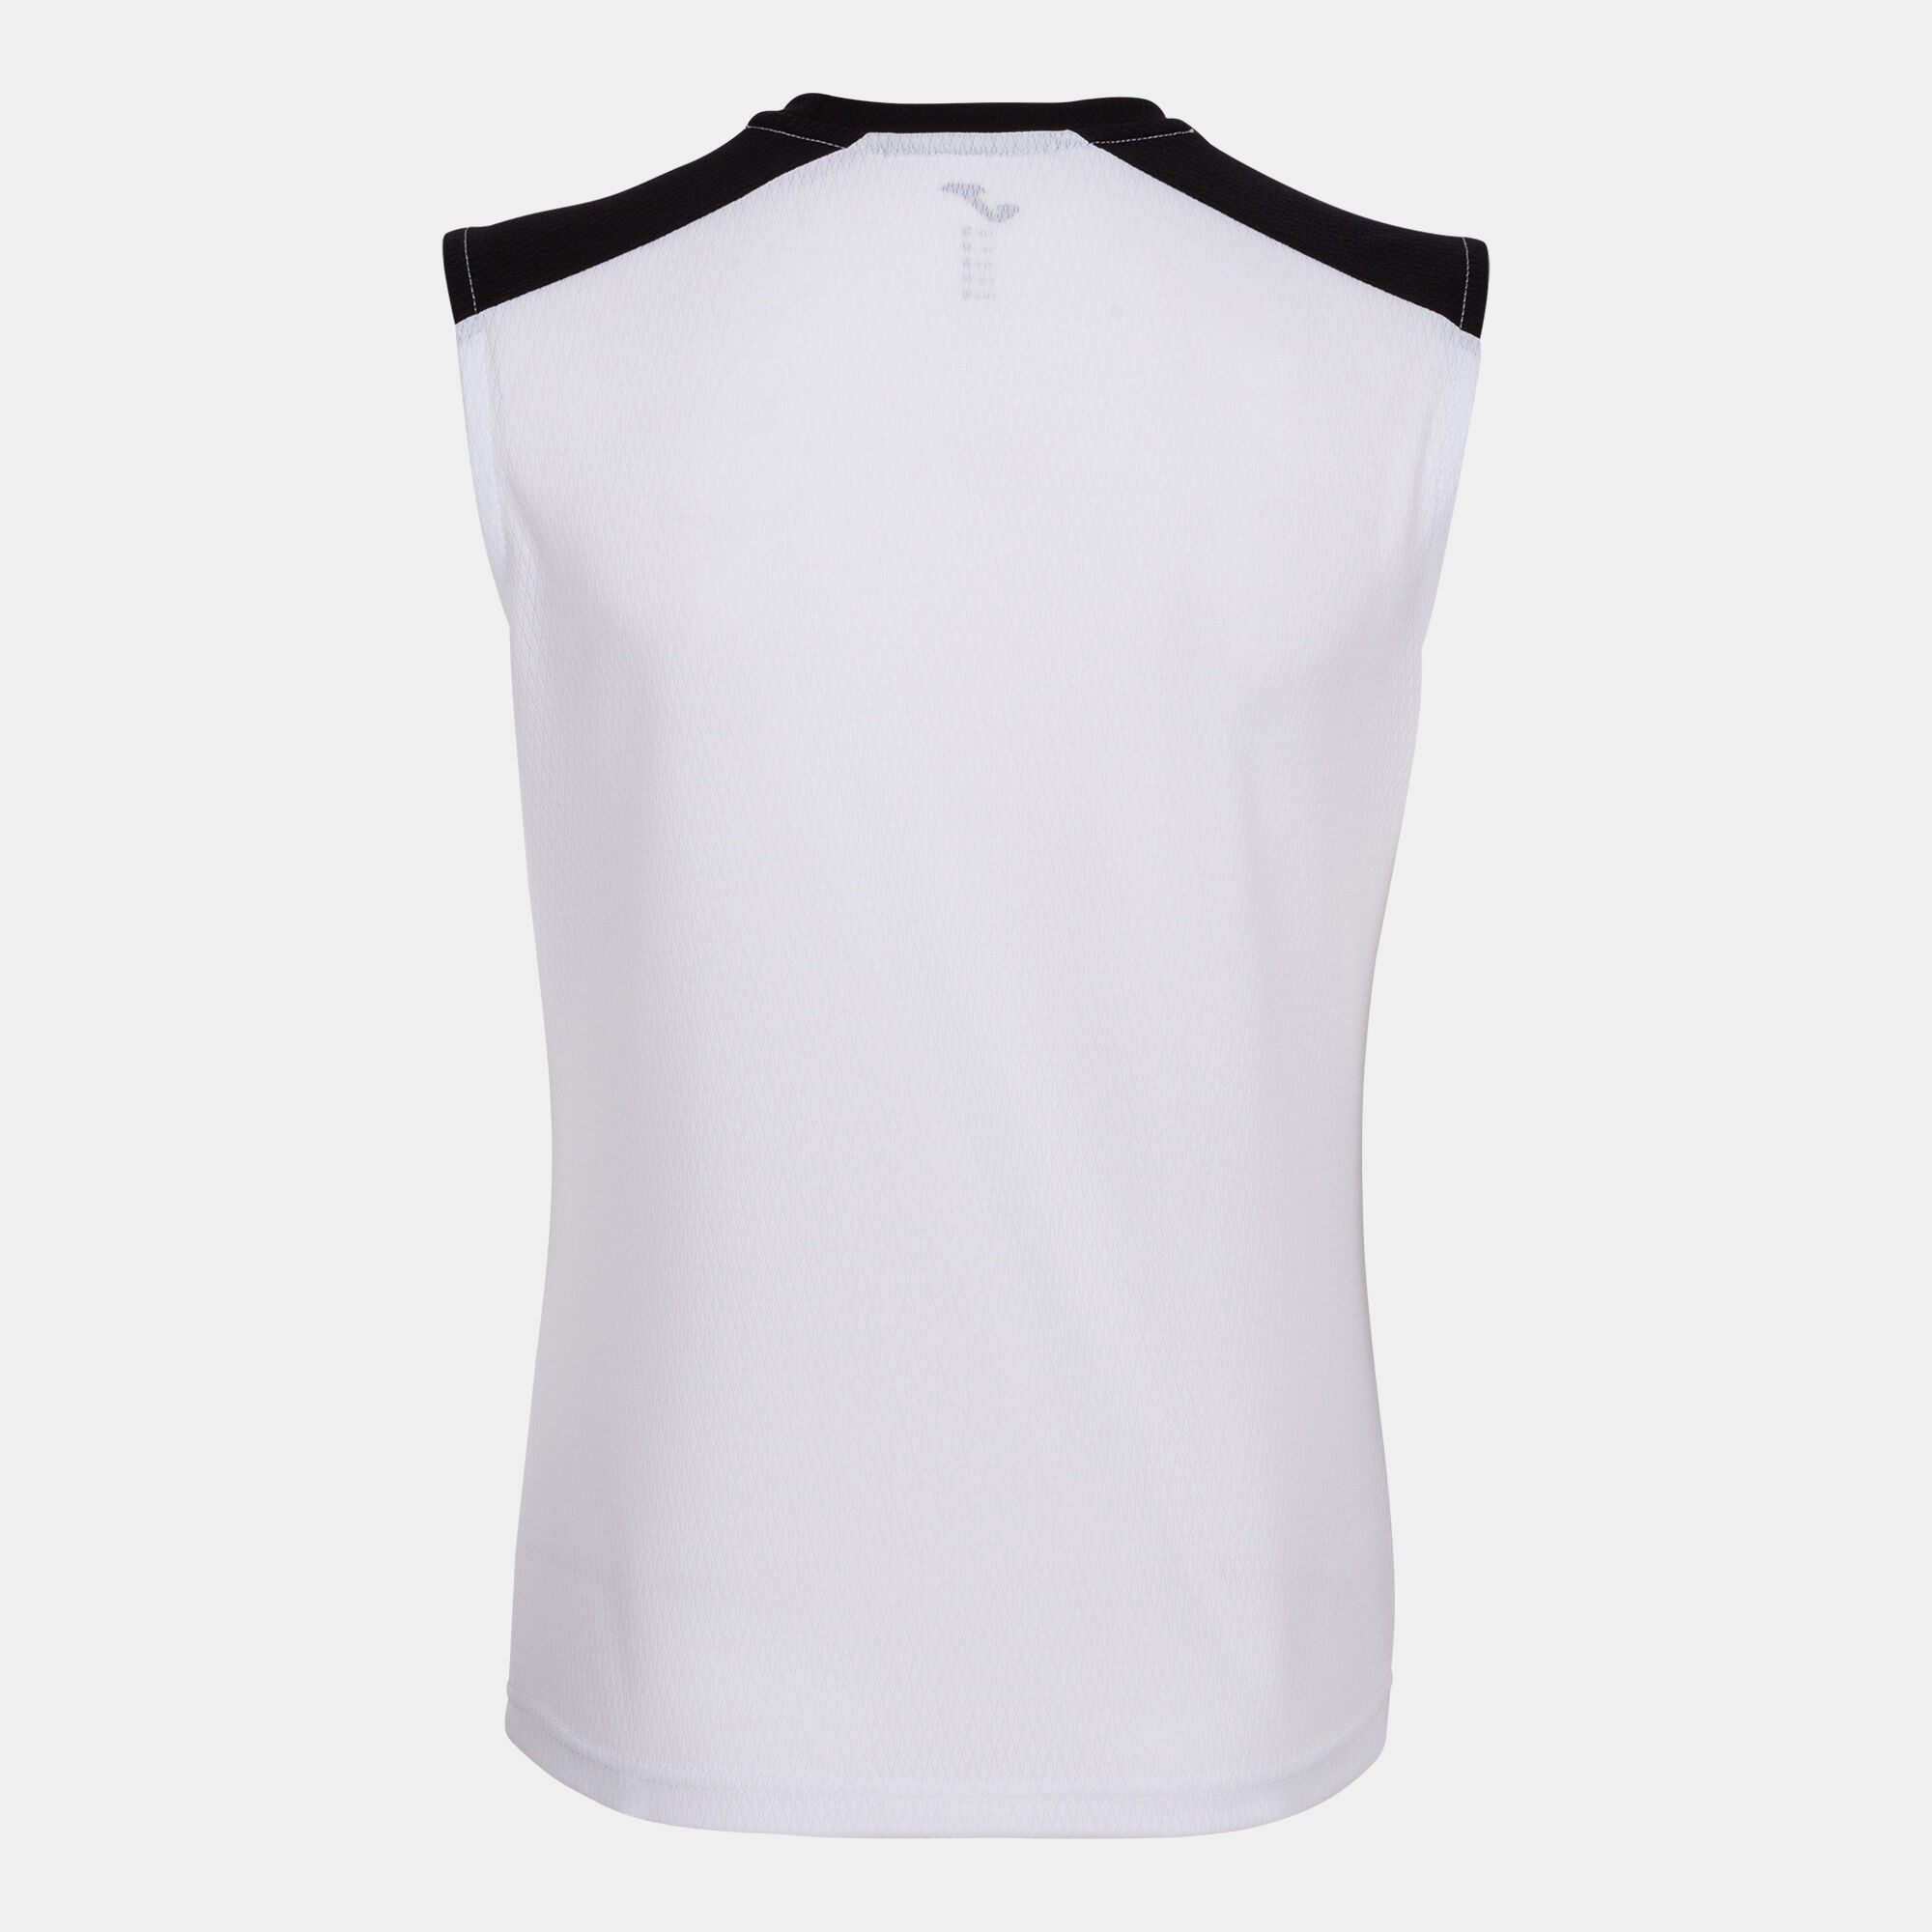 Schulterriemen-shirt frau Eco Championship weiß schwarz